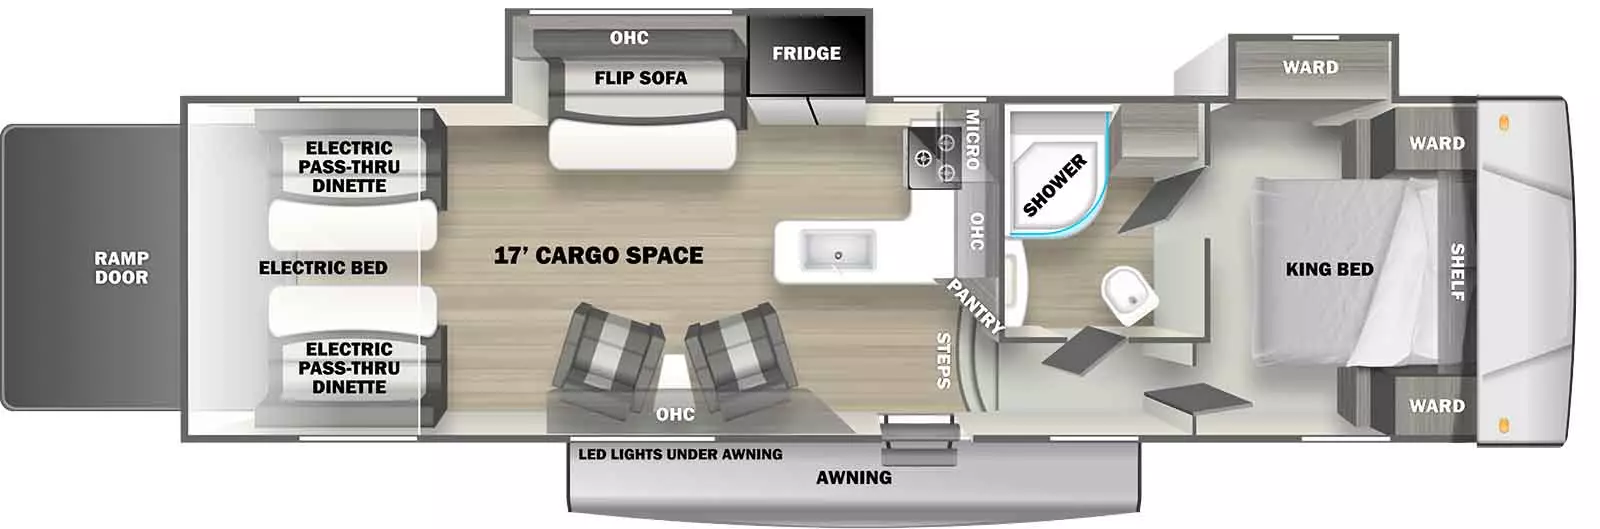 326GSLR Floorplan Image